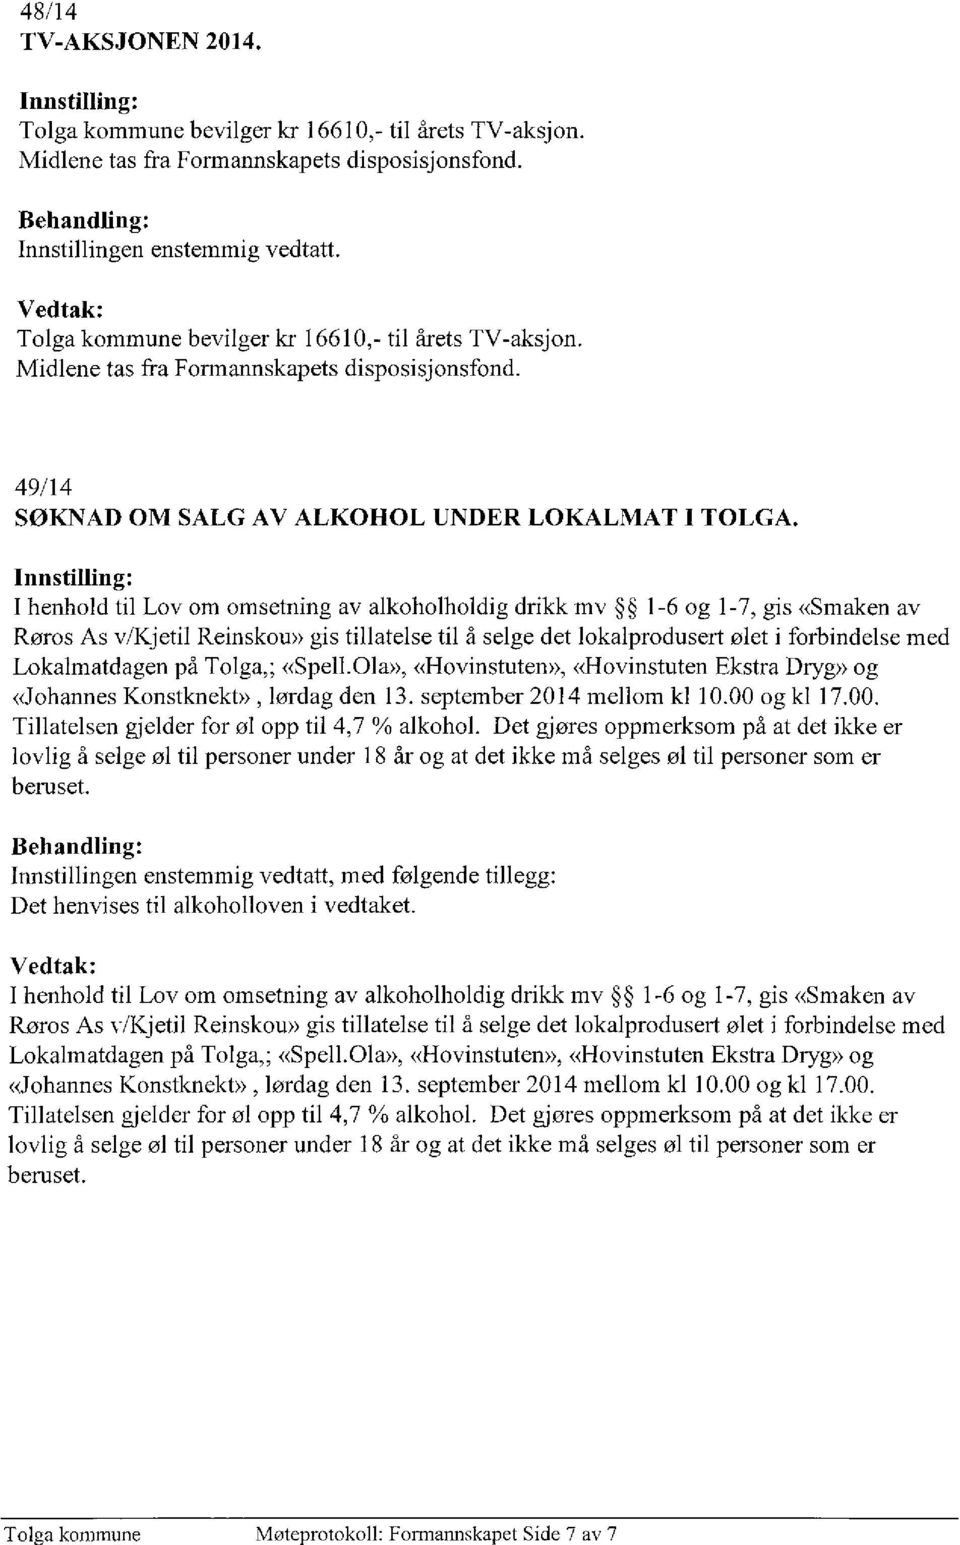 I henhold til Lov om omsetning av alkoholholdig drikk mv 1-6 og 1-7, gis «Smaken av Røros As v/kjetil Reinskou» gis tillatelse til å selge det lokalprodusert ølet i forbindelse med Lokalmatdagen på